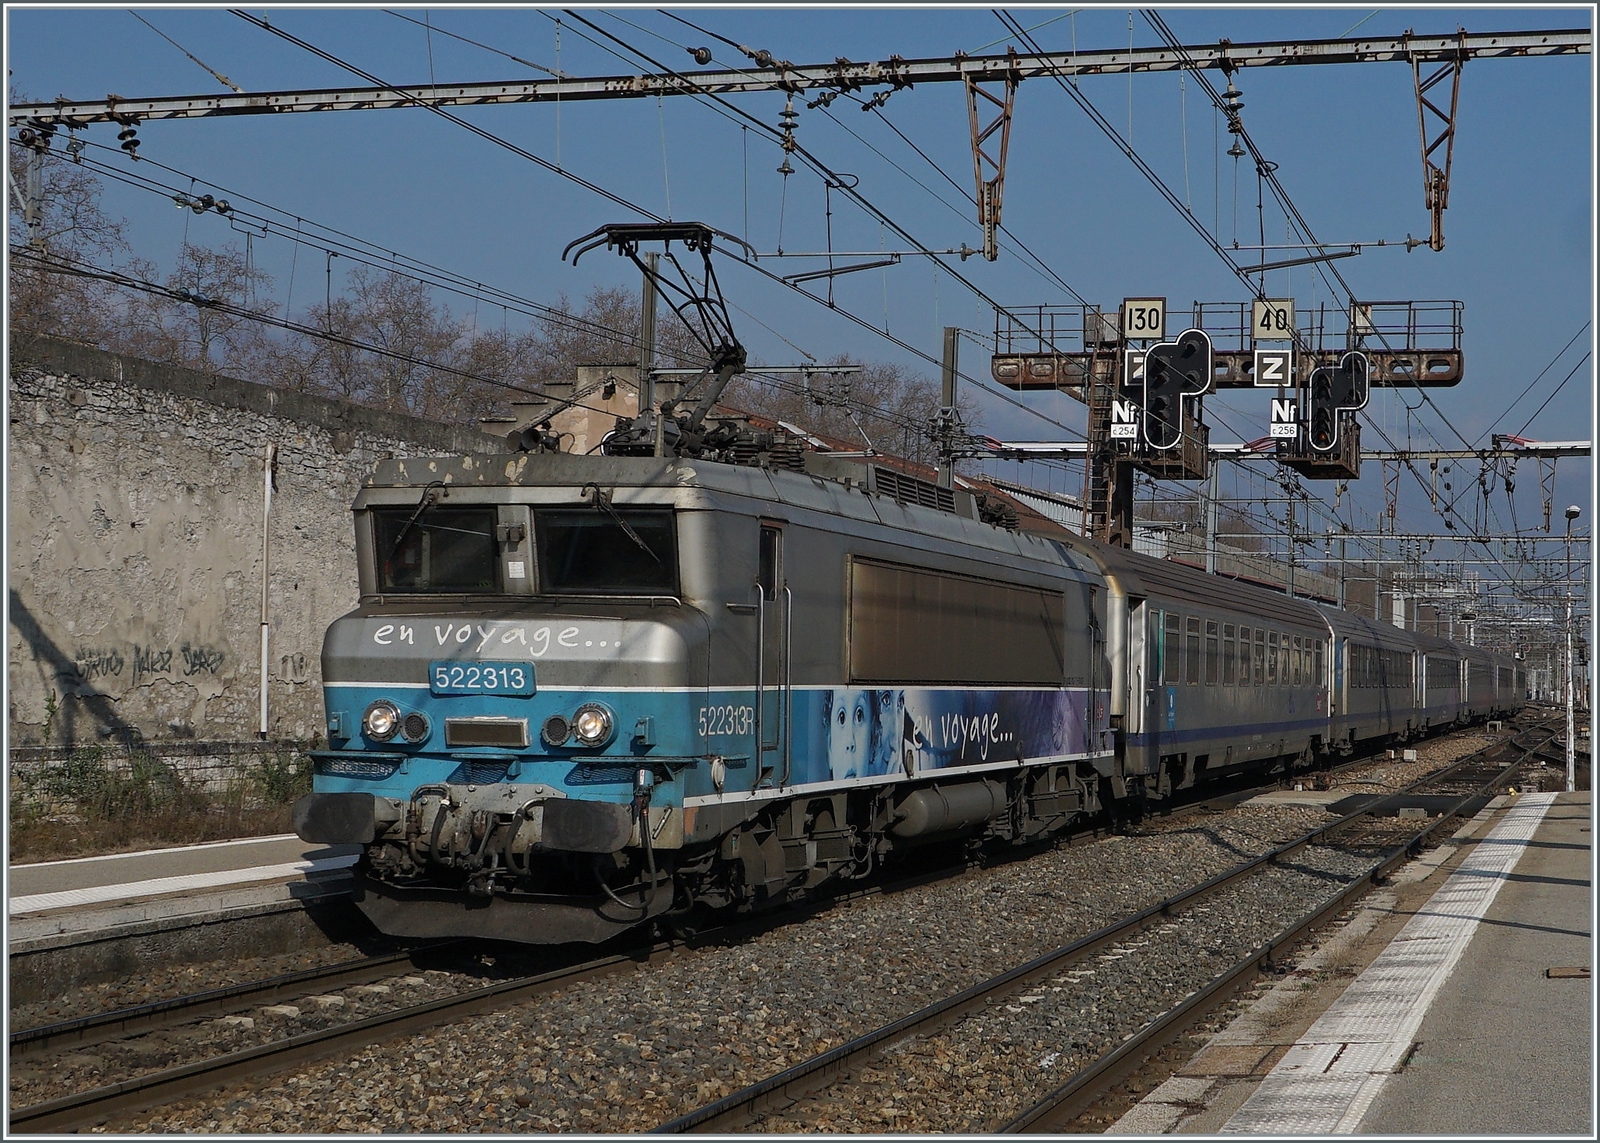 Die SNCF BB 22313 erreiht mit ihrem TER den Bahnhof von Chambéry-Challes-les-Eaux. 
Auch hier trägt die schwere SNCF 1500 Volt Gleichstrom Fahrleitung auf interessante Weise zum Reiz dieses Bildes bei.

22. März 2022 